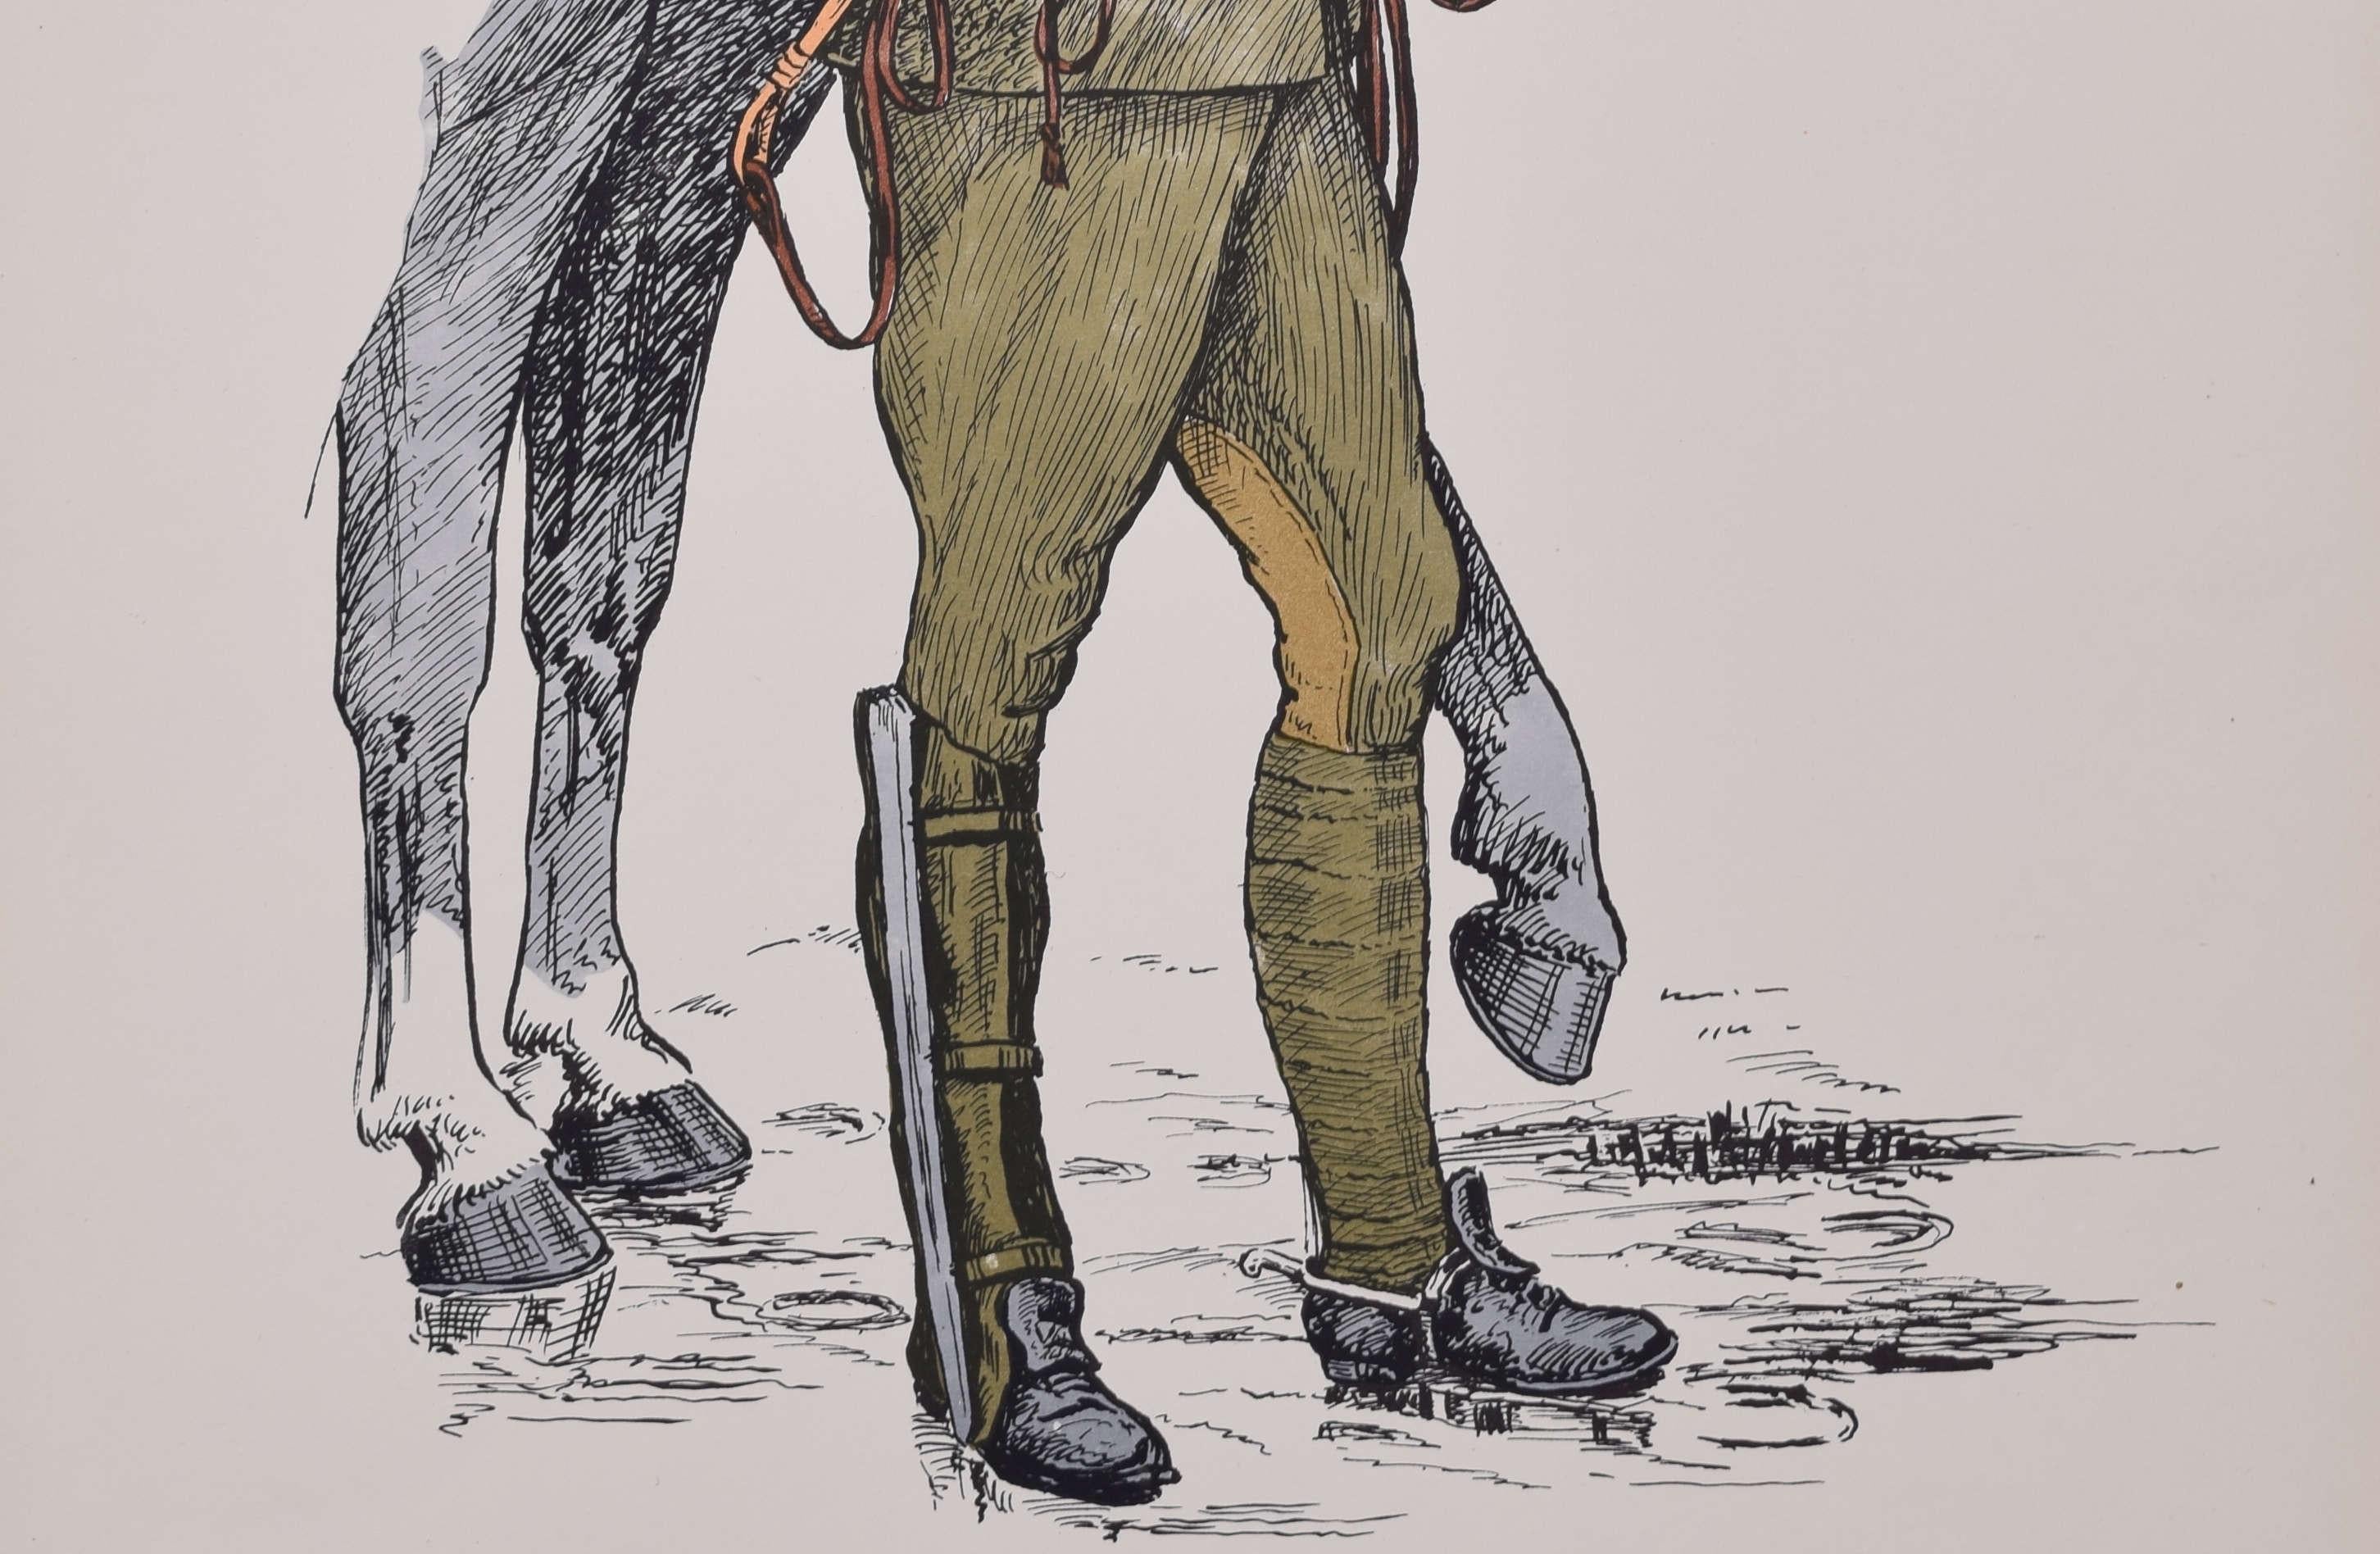 Uniform des Fahrers der Königlichen Feldartillerie 1914 - 1918
Lithographie
50 x 31 cm

Produziert für das Institute of Army Education. Gedruckt für das HM Stationery Office von I A Limited, Southall 51.

Diese Plakate wurden vom Institut für